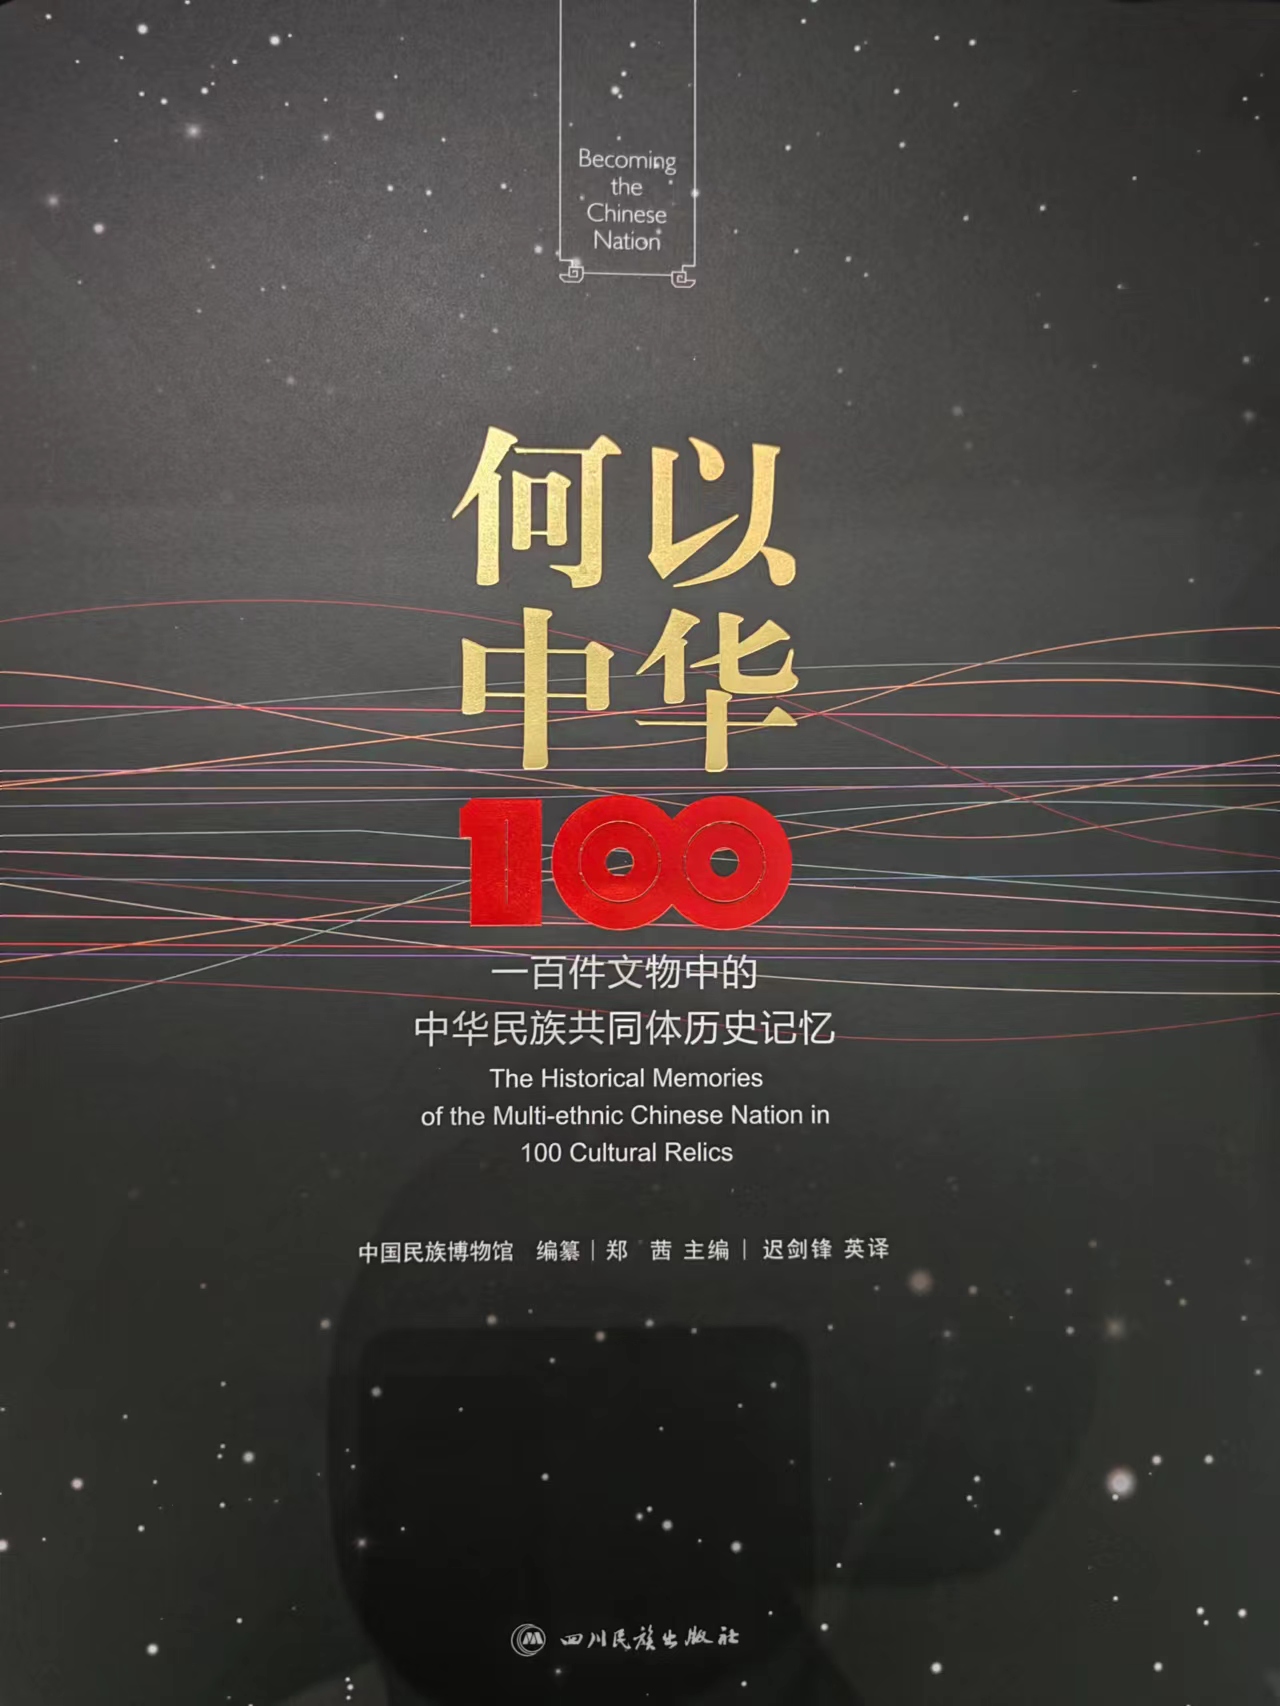 《何以中华——一百件文物中的中华民族共同体历史记忆》亮相天府书展